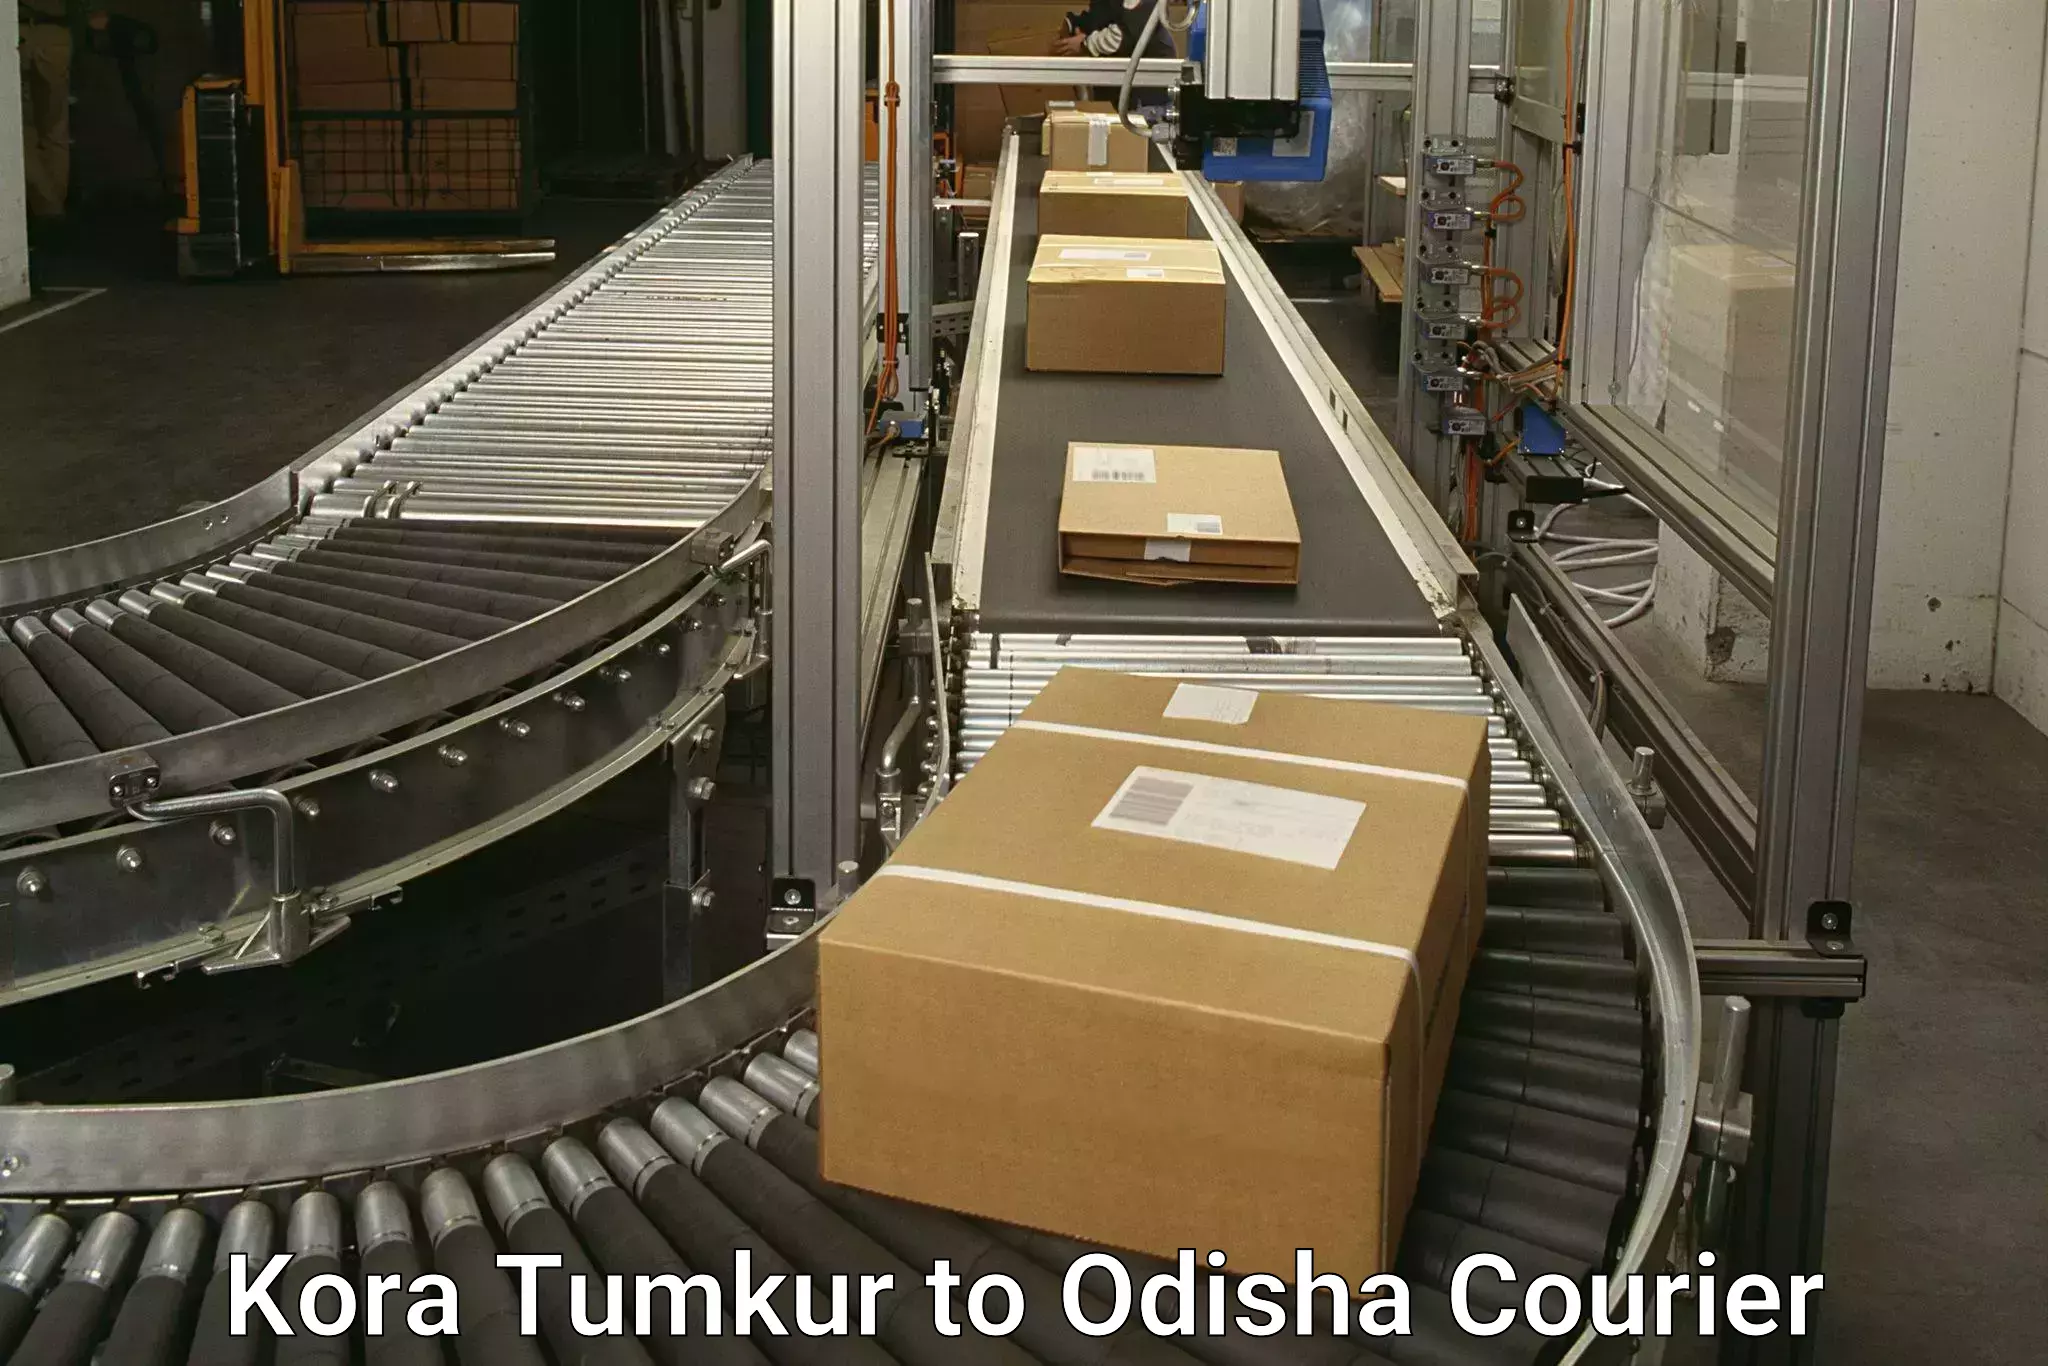 Efficient parcel delivery Kora Tumkur to Gunupur